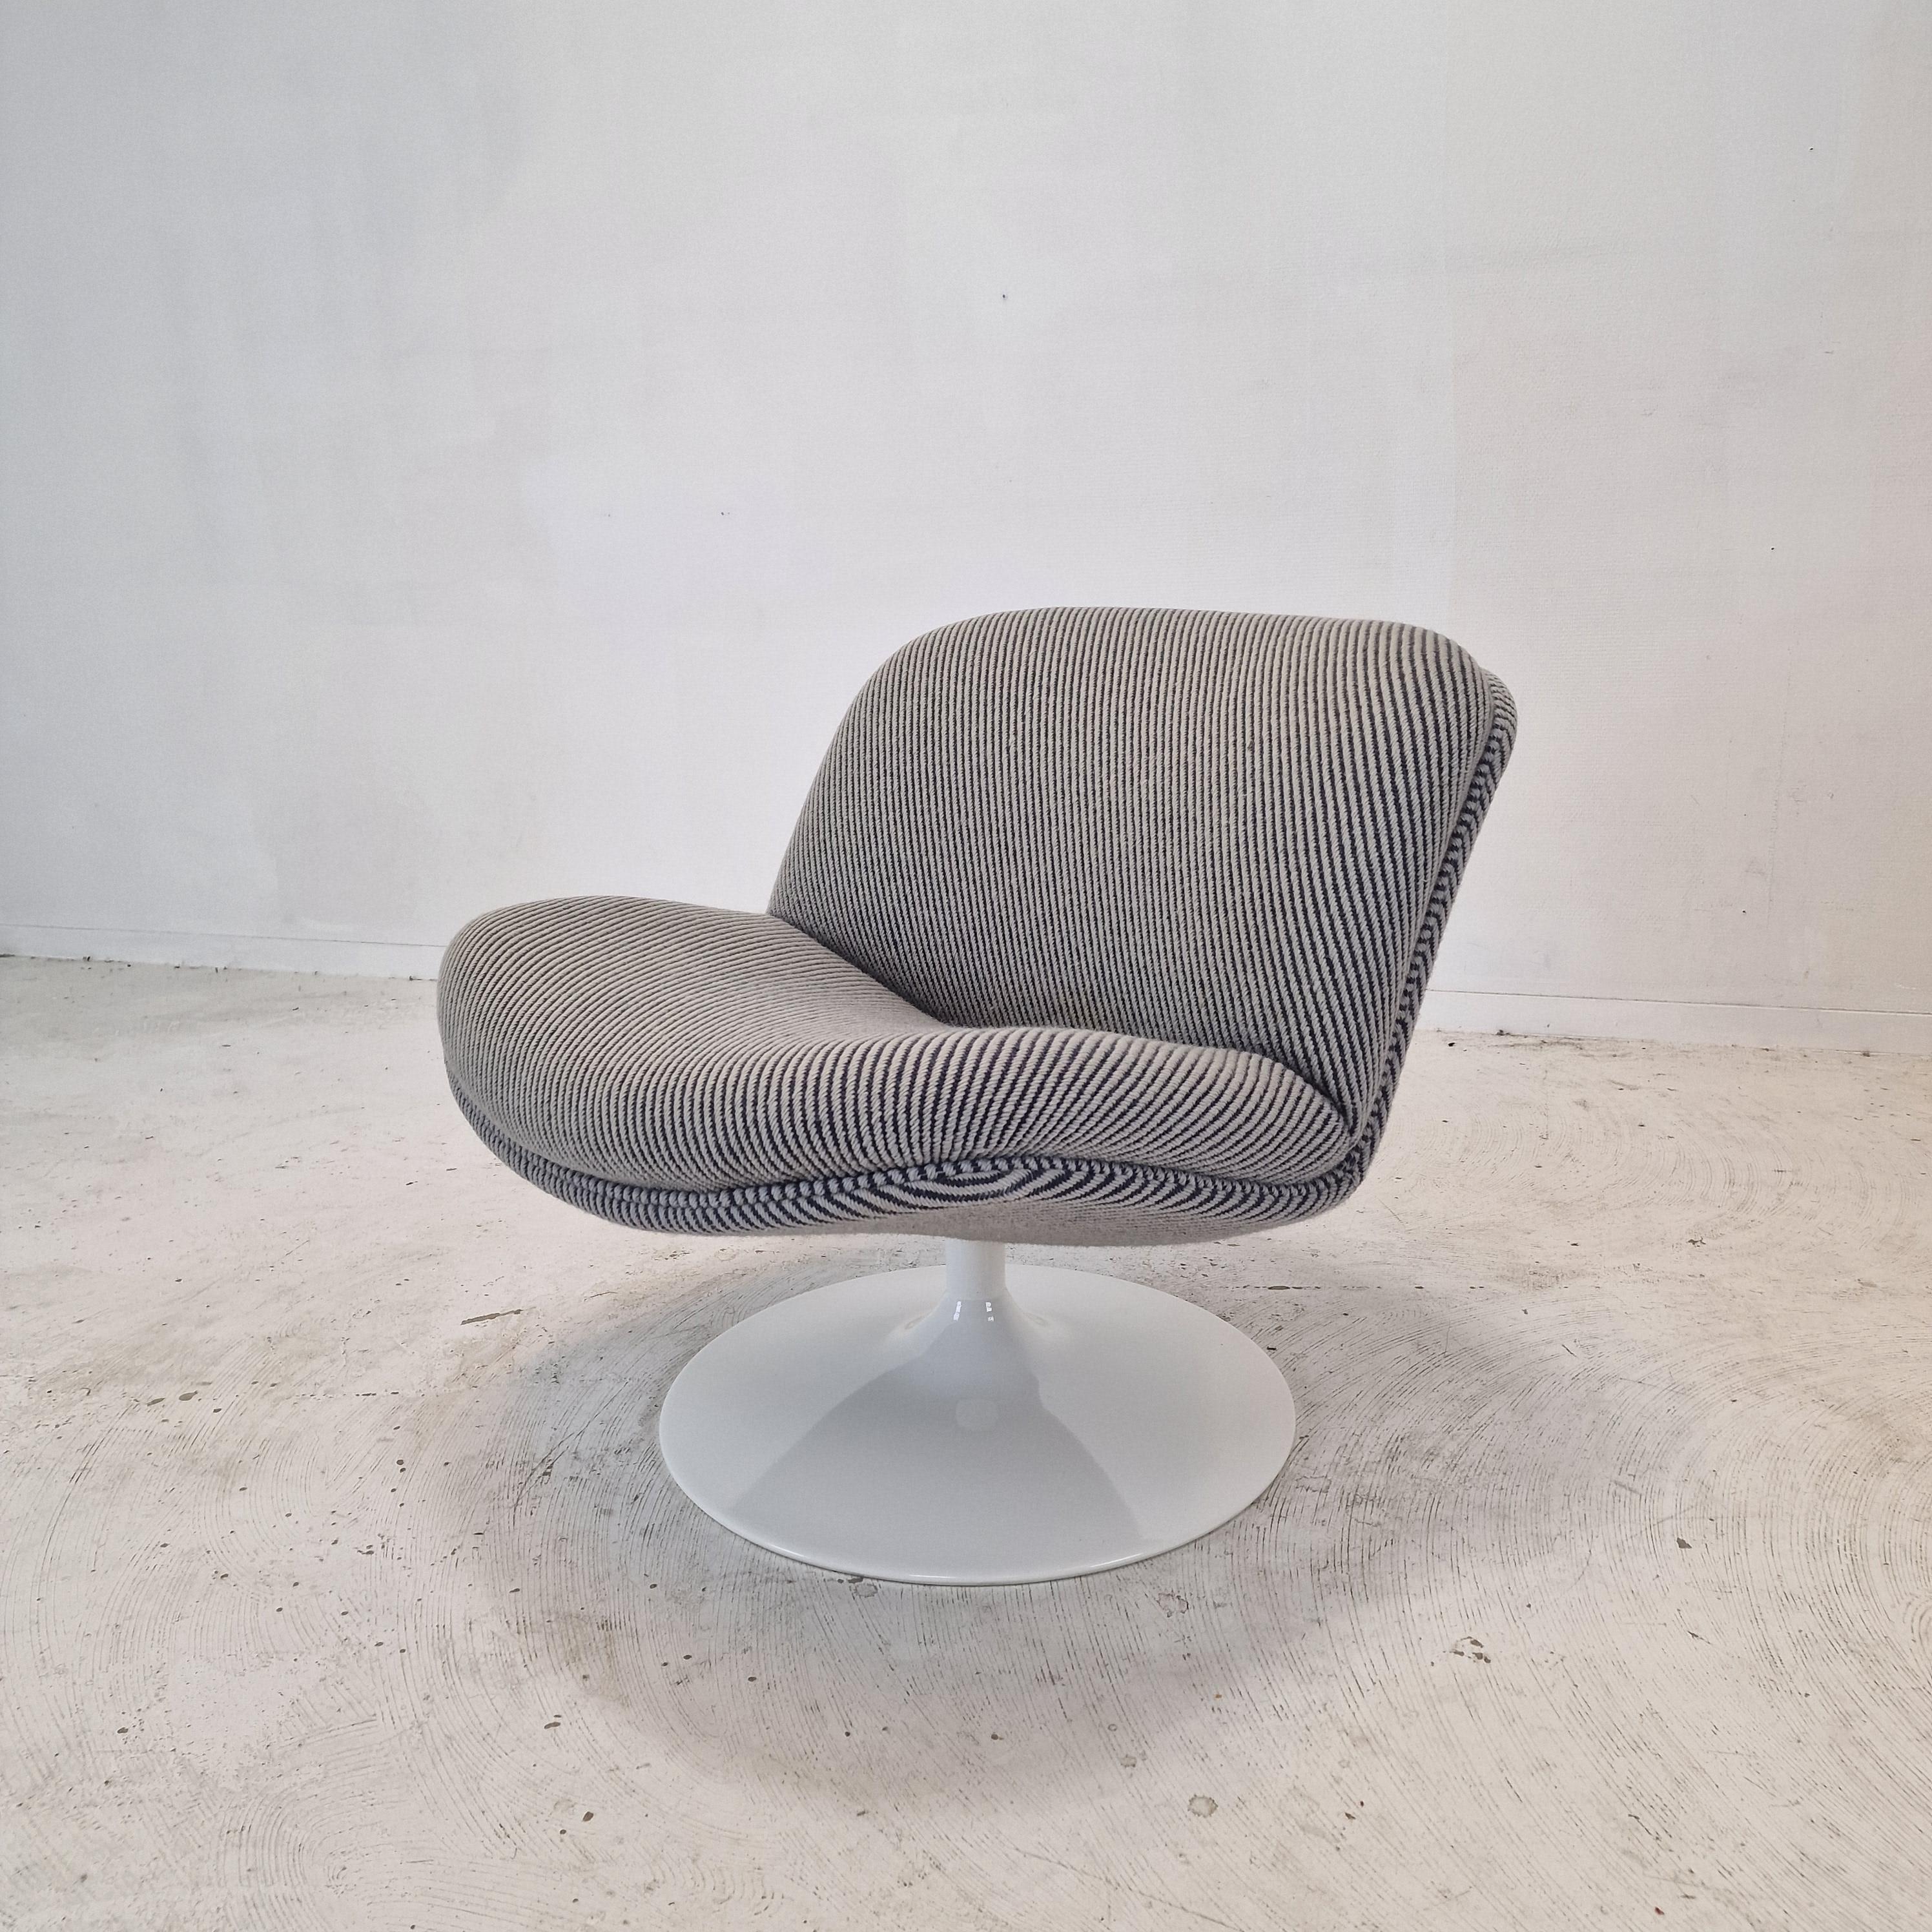 Chaise longue 508 très mignonne et confortable conçue par le célèbre Geoffrey Harcourt pour Artifort dans les années 70.

Cadre en bois très solide avec un grand pied métallique pivotant.  
La chaise est dotée d'un tissu en laine d'origine de haute